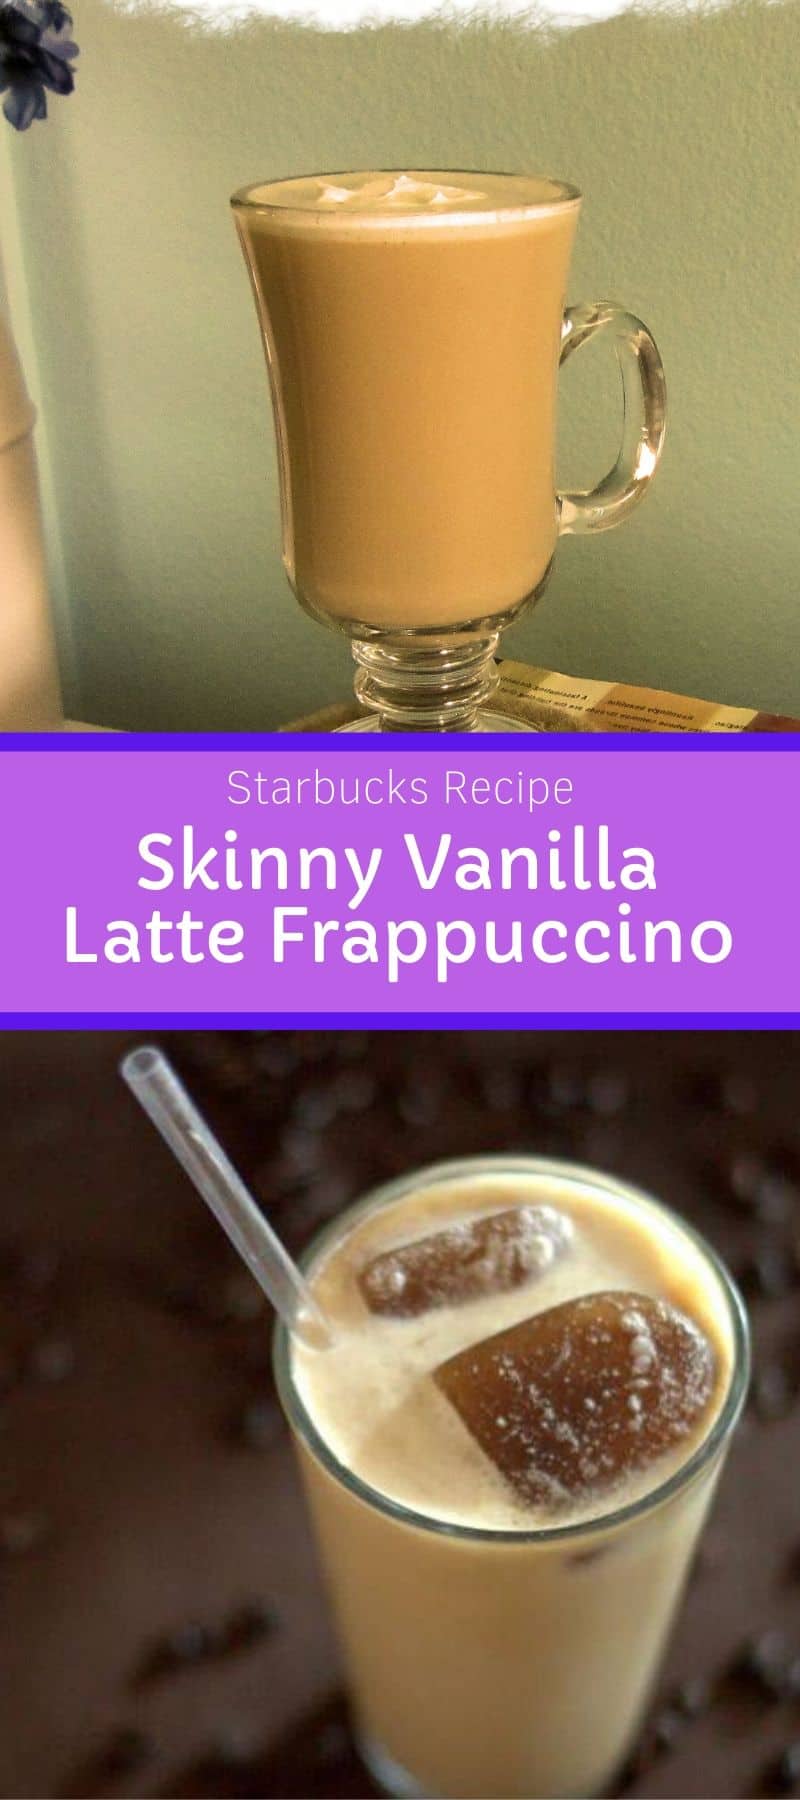 Starbucks Skinny Vanilla Latte Frappuccino Recipe 3